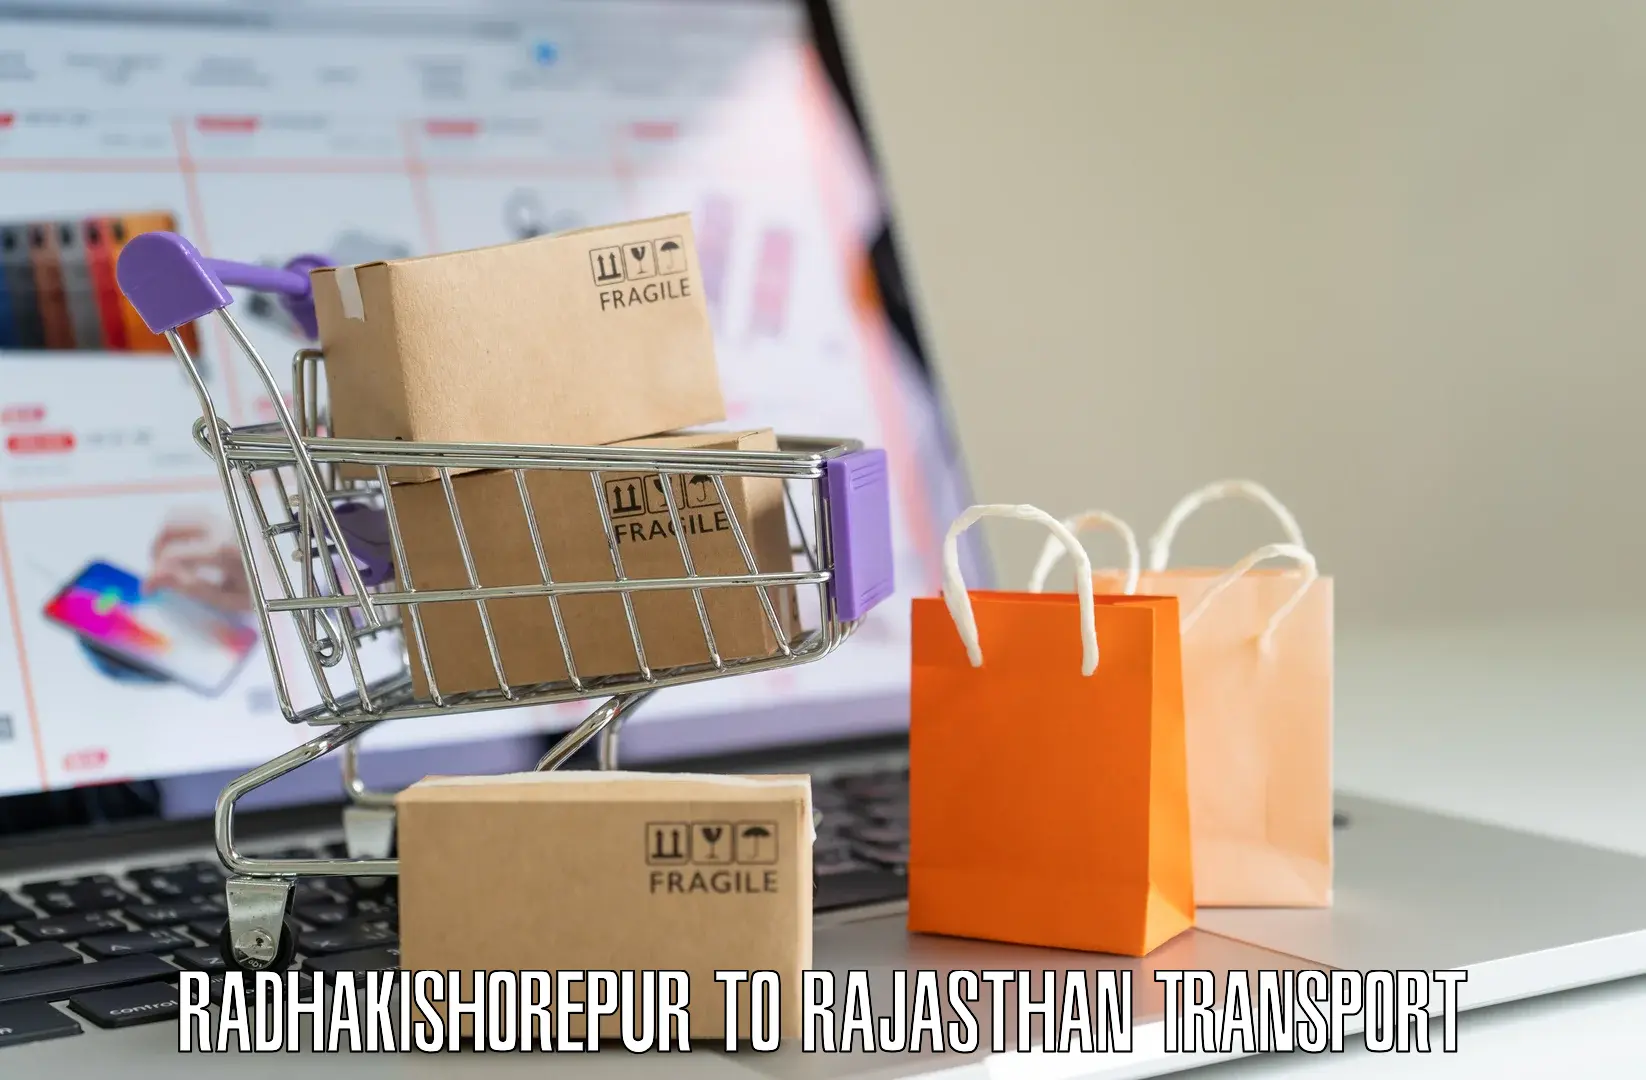 Two wheeler parcel service Radhakishorepur to Rajasthan